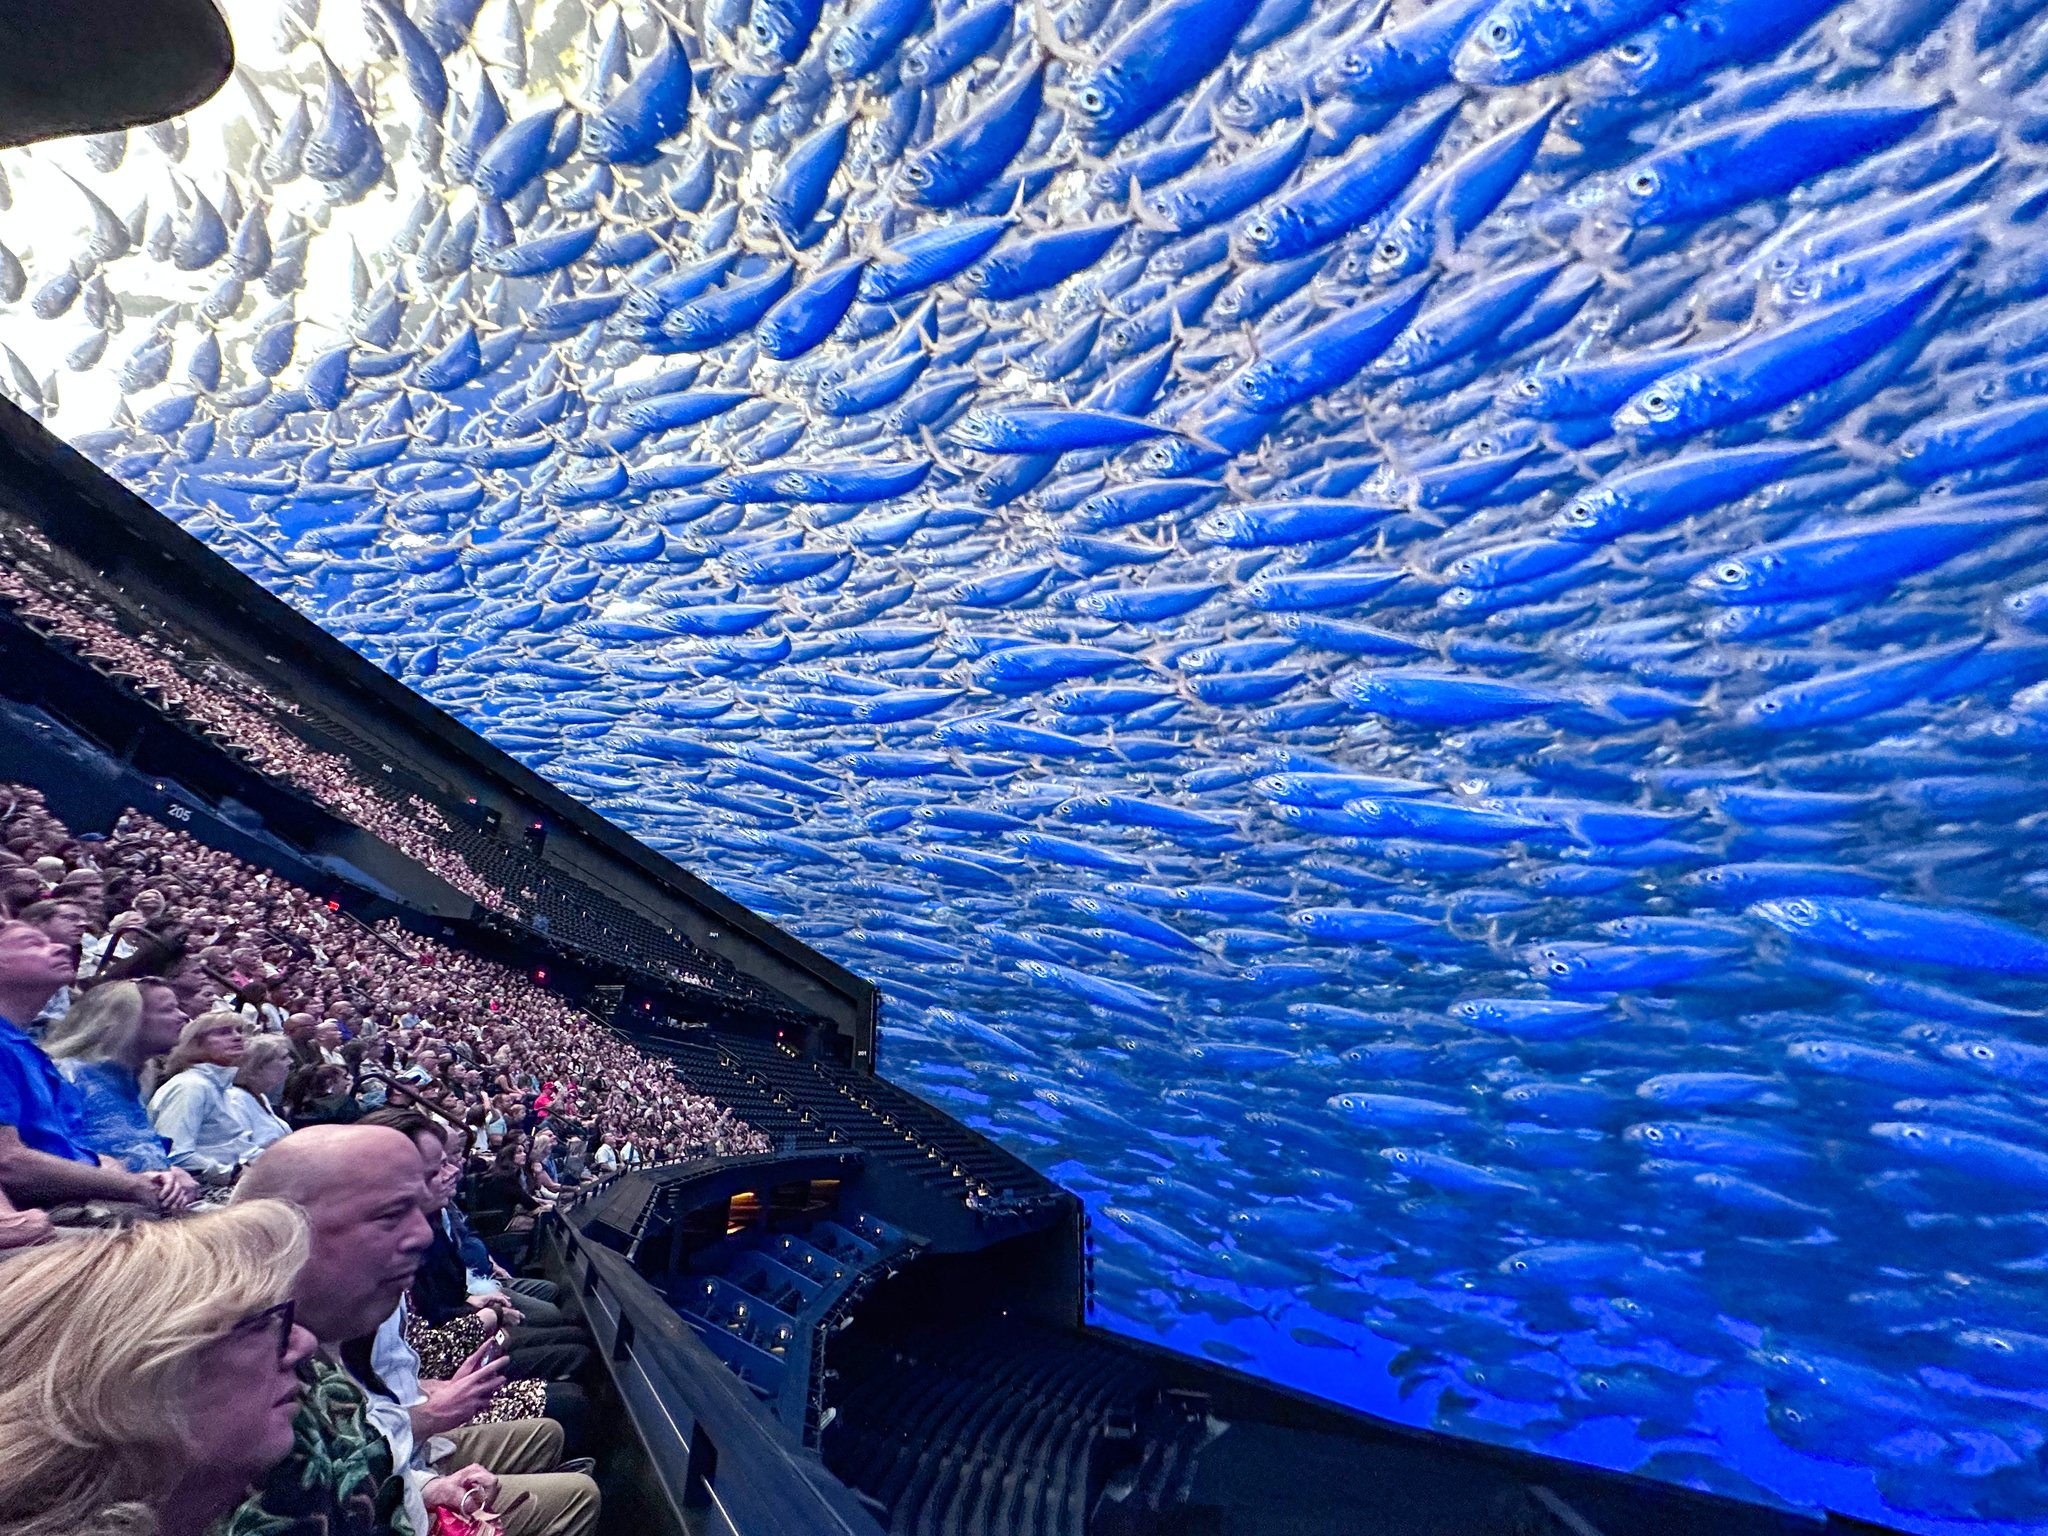 수중 촬영 영상이 화면을 가득 채울 때는 깊은 바다를 유영하는 것 같다.